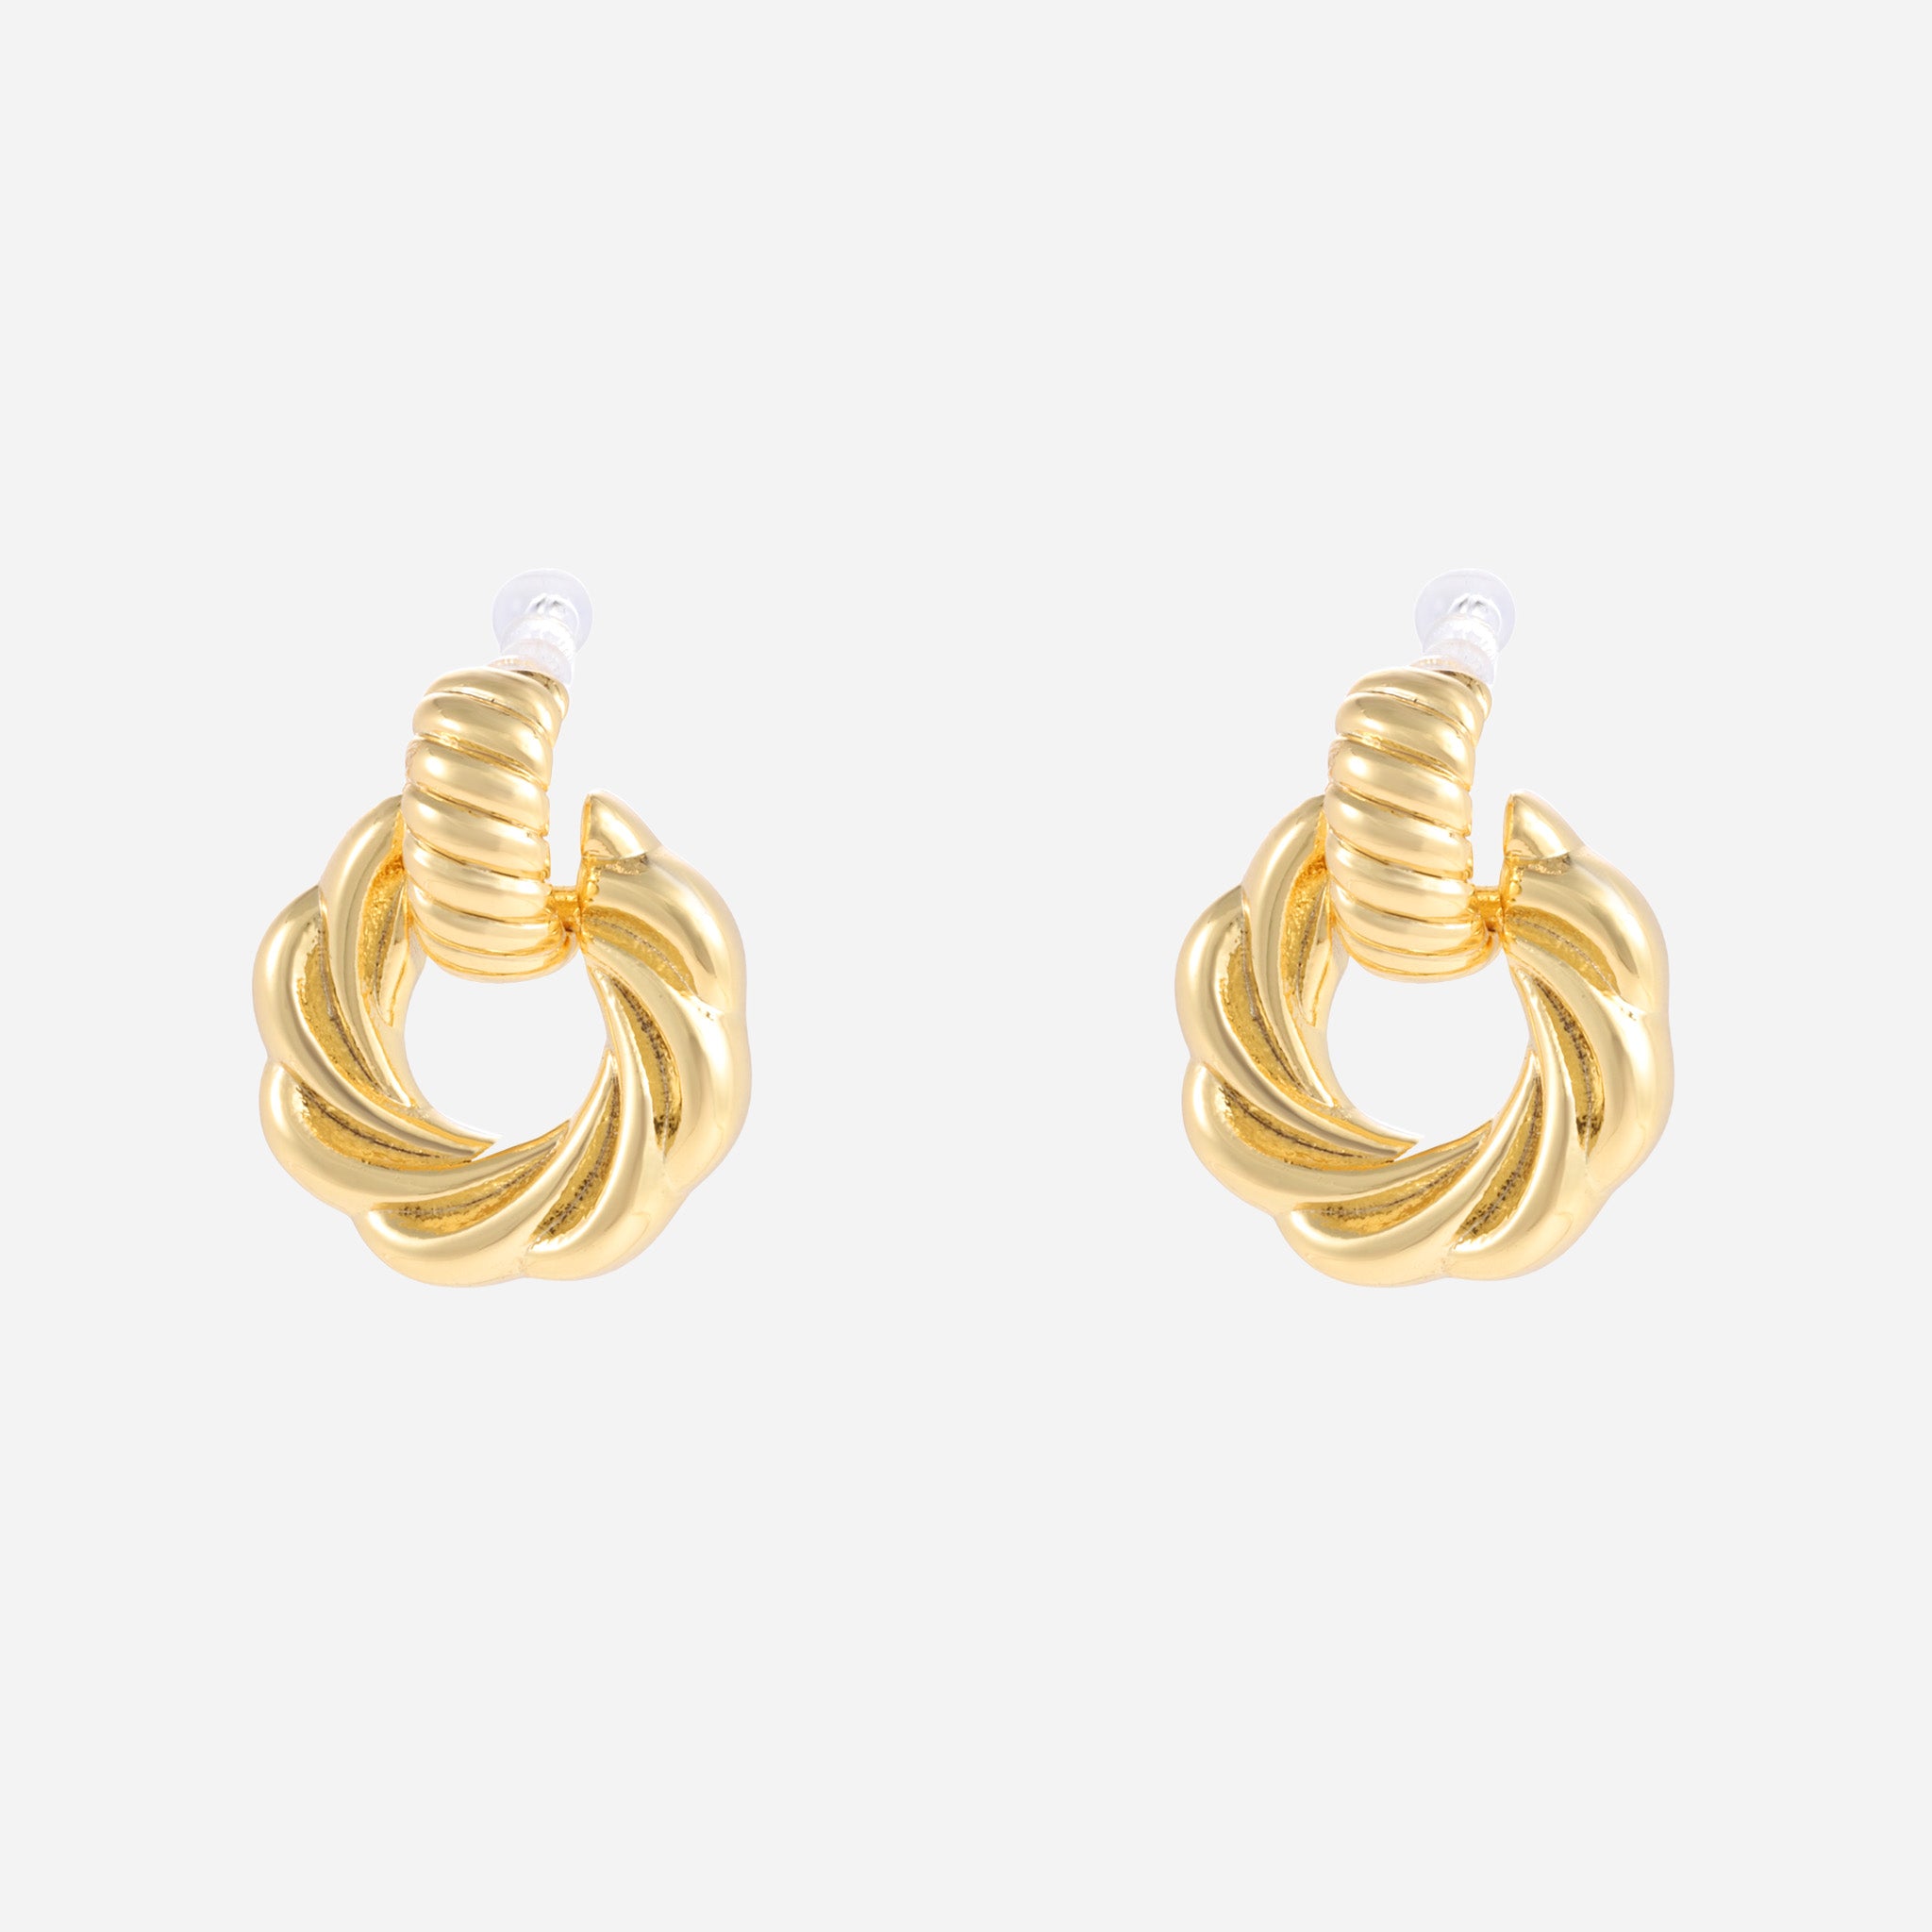 Twist door knocker Clip-On Stud Earrings